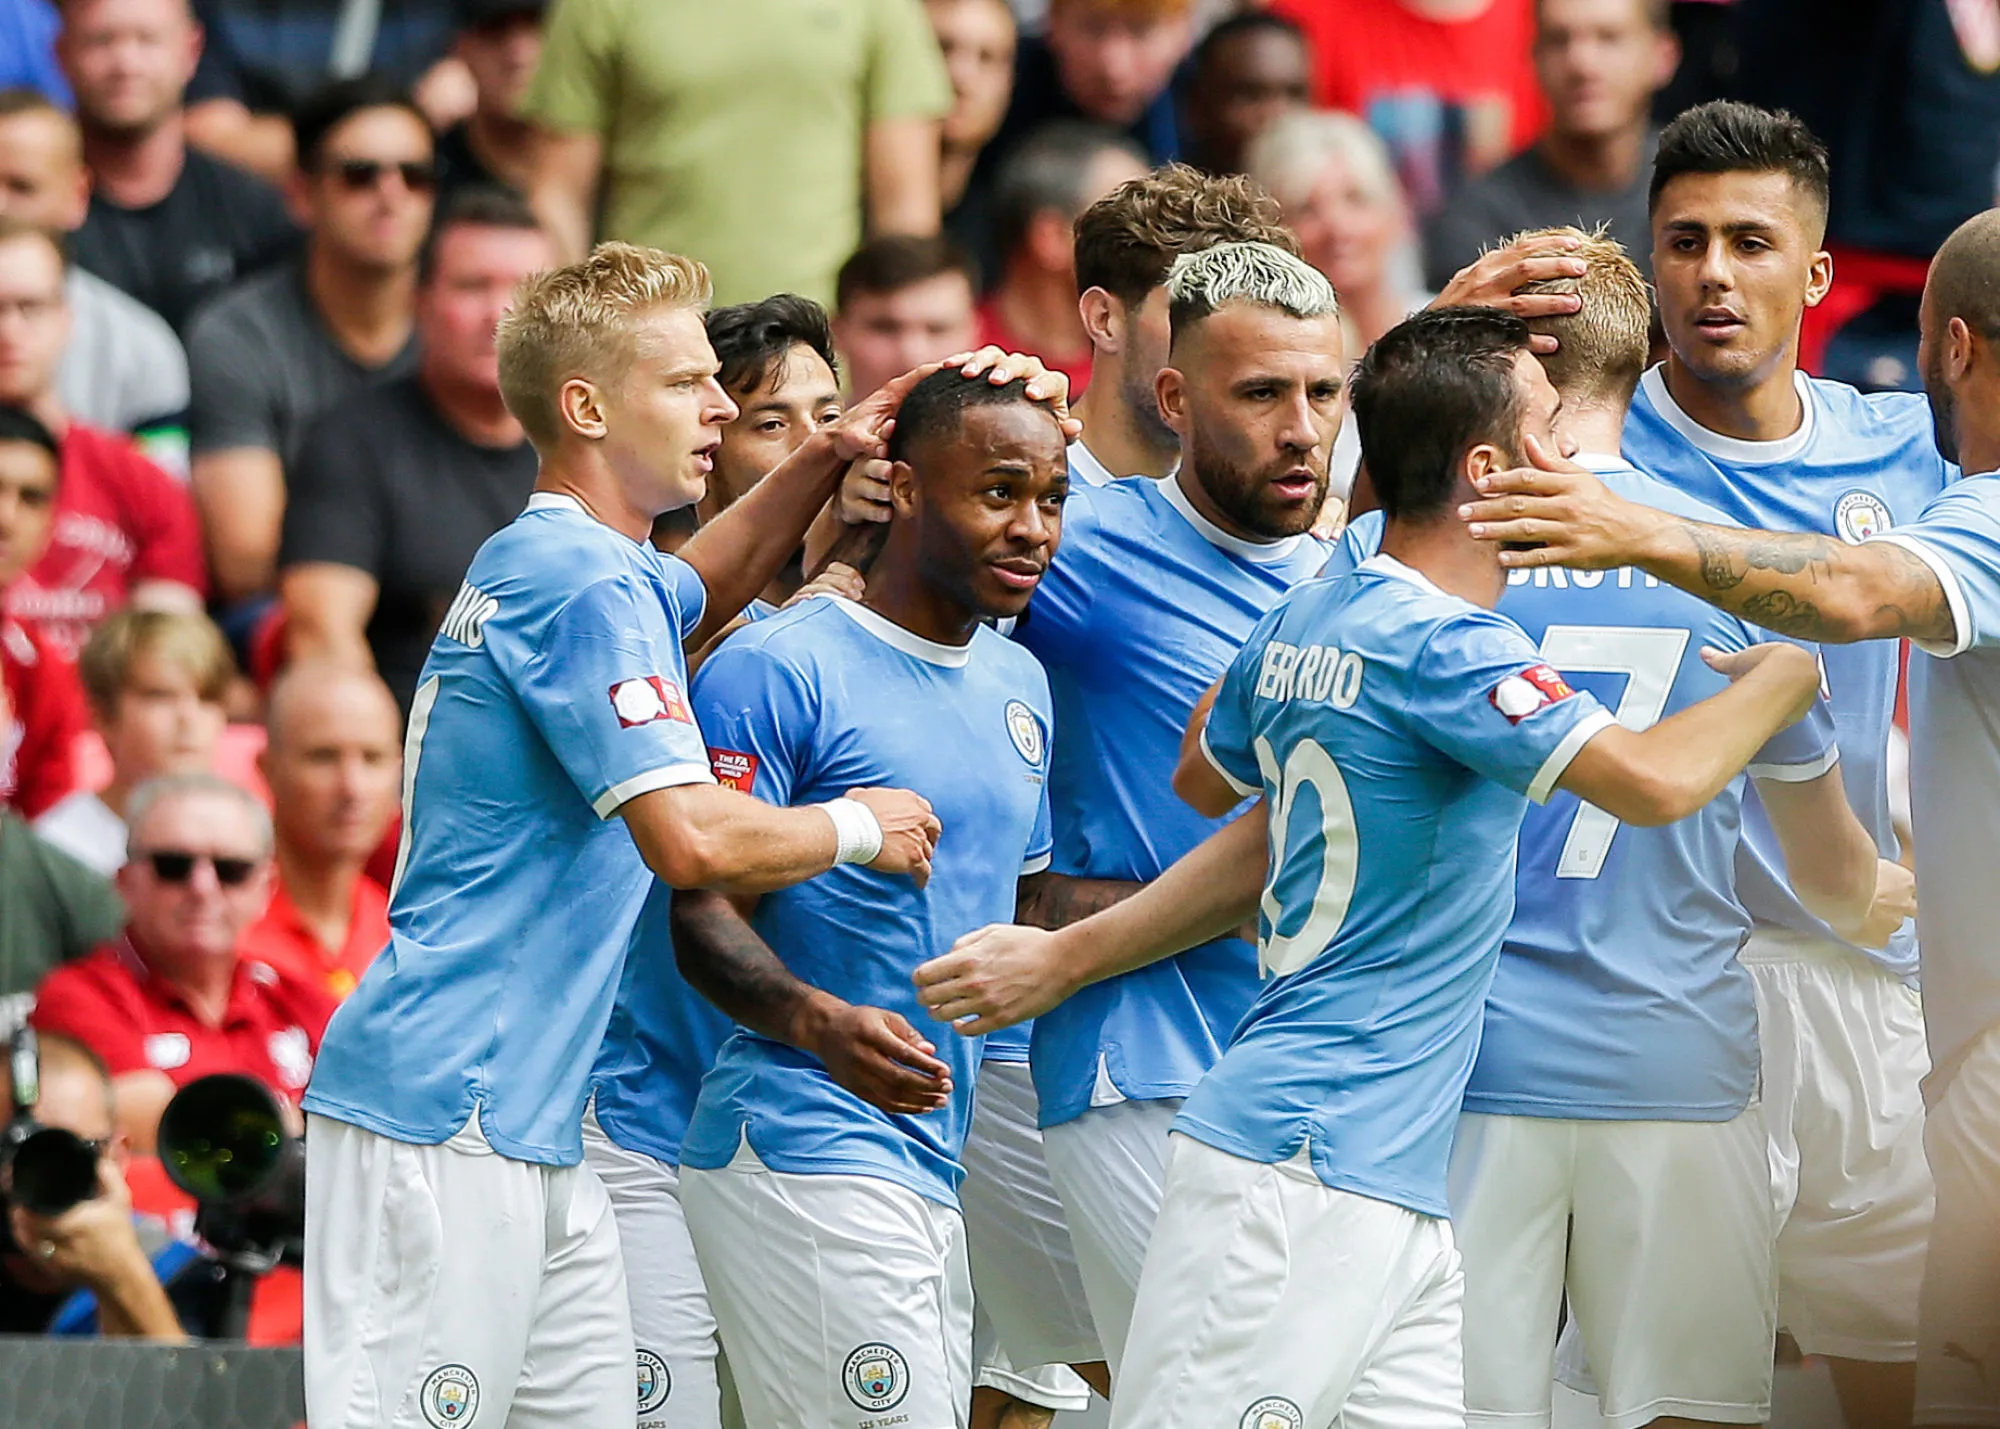 Pronostic Manchester City Shakhtar Donetsk : Analyse, prono et cotes doublées sur le match de Ligue des champions